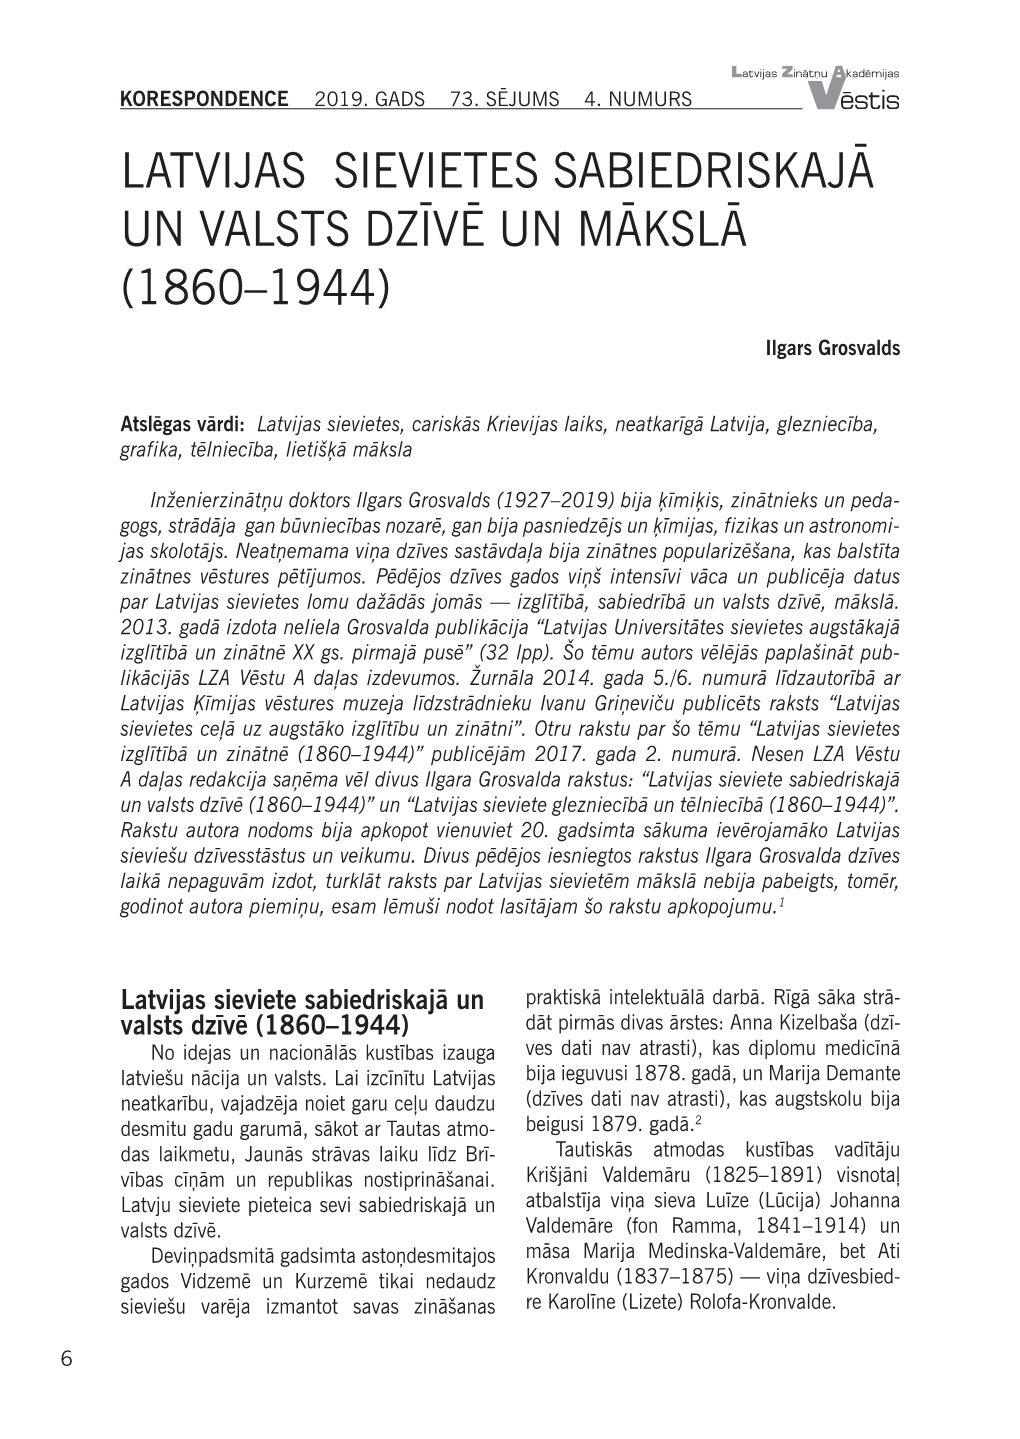 Latvijas Sievietes Sabiedriskajā Un Valsts Dzīvē Un Mākslā (1860–1944)